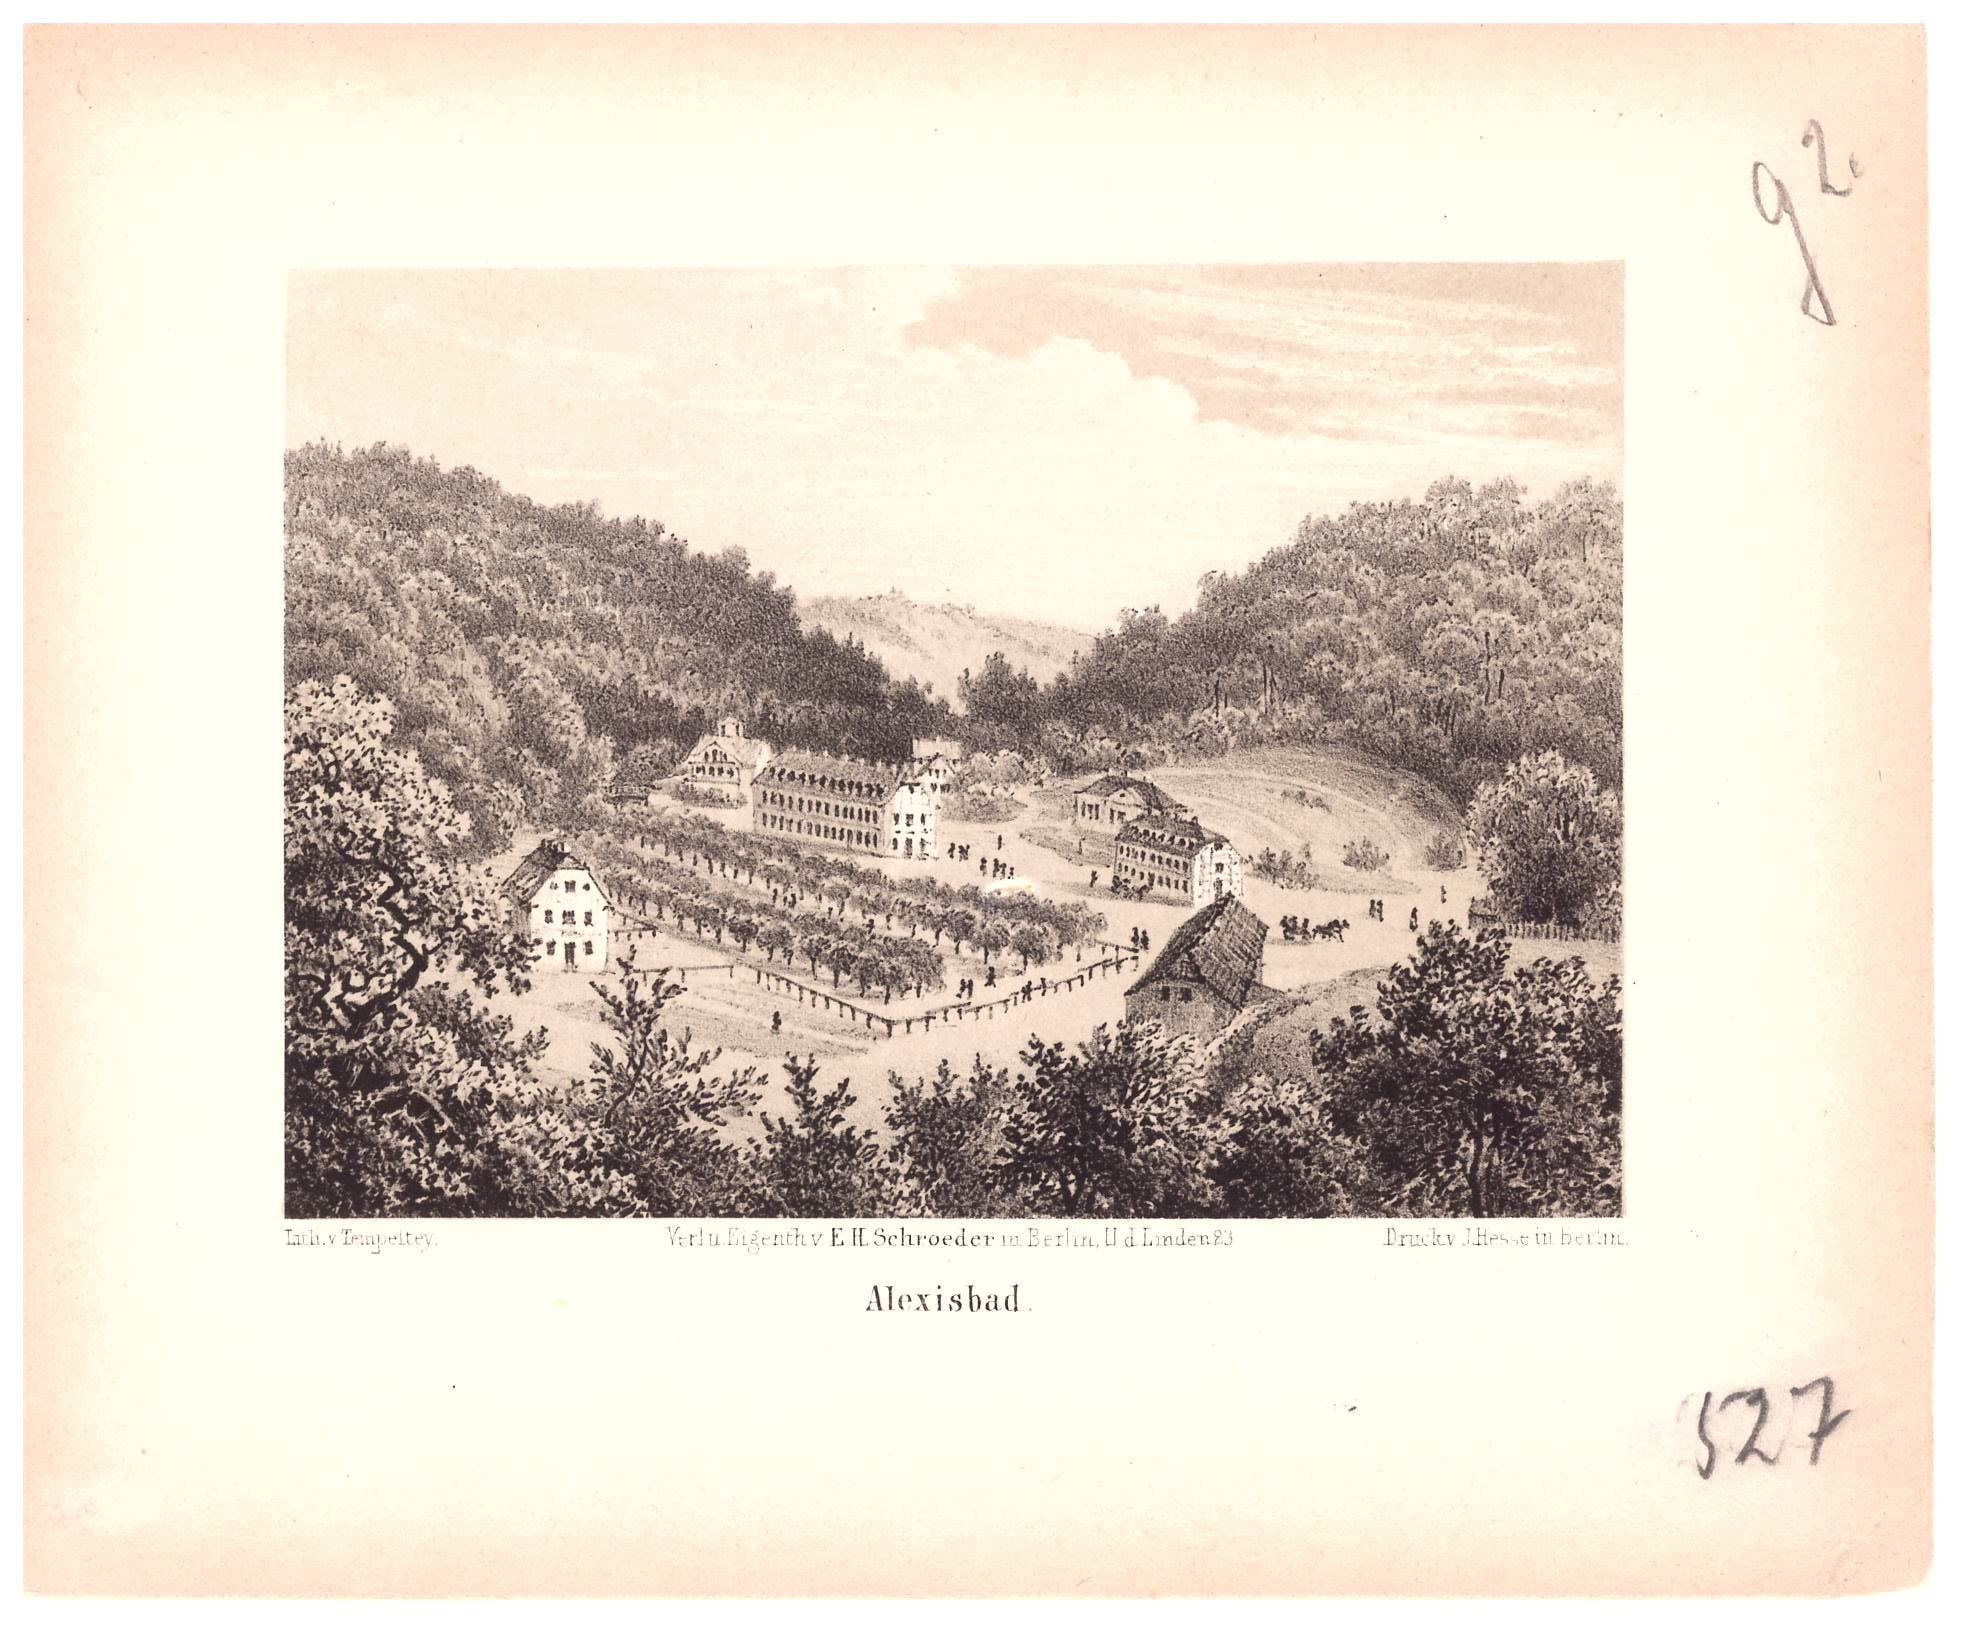 Alexisbad: Kurbad von der Schönsicht, um 1845 (Schloß Wernigerode GmbH RR-F)